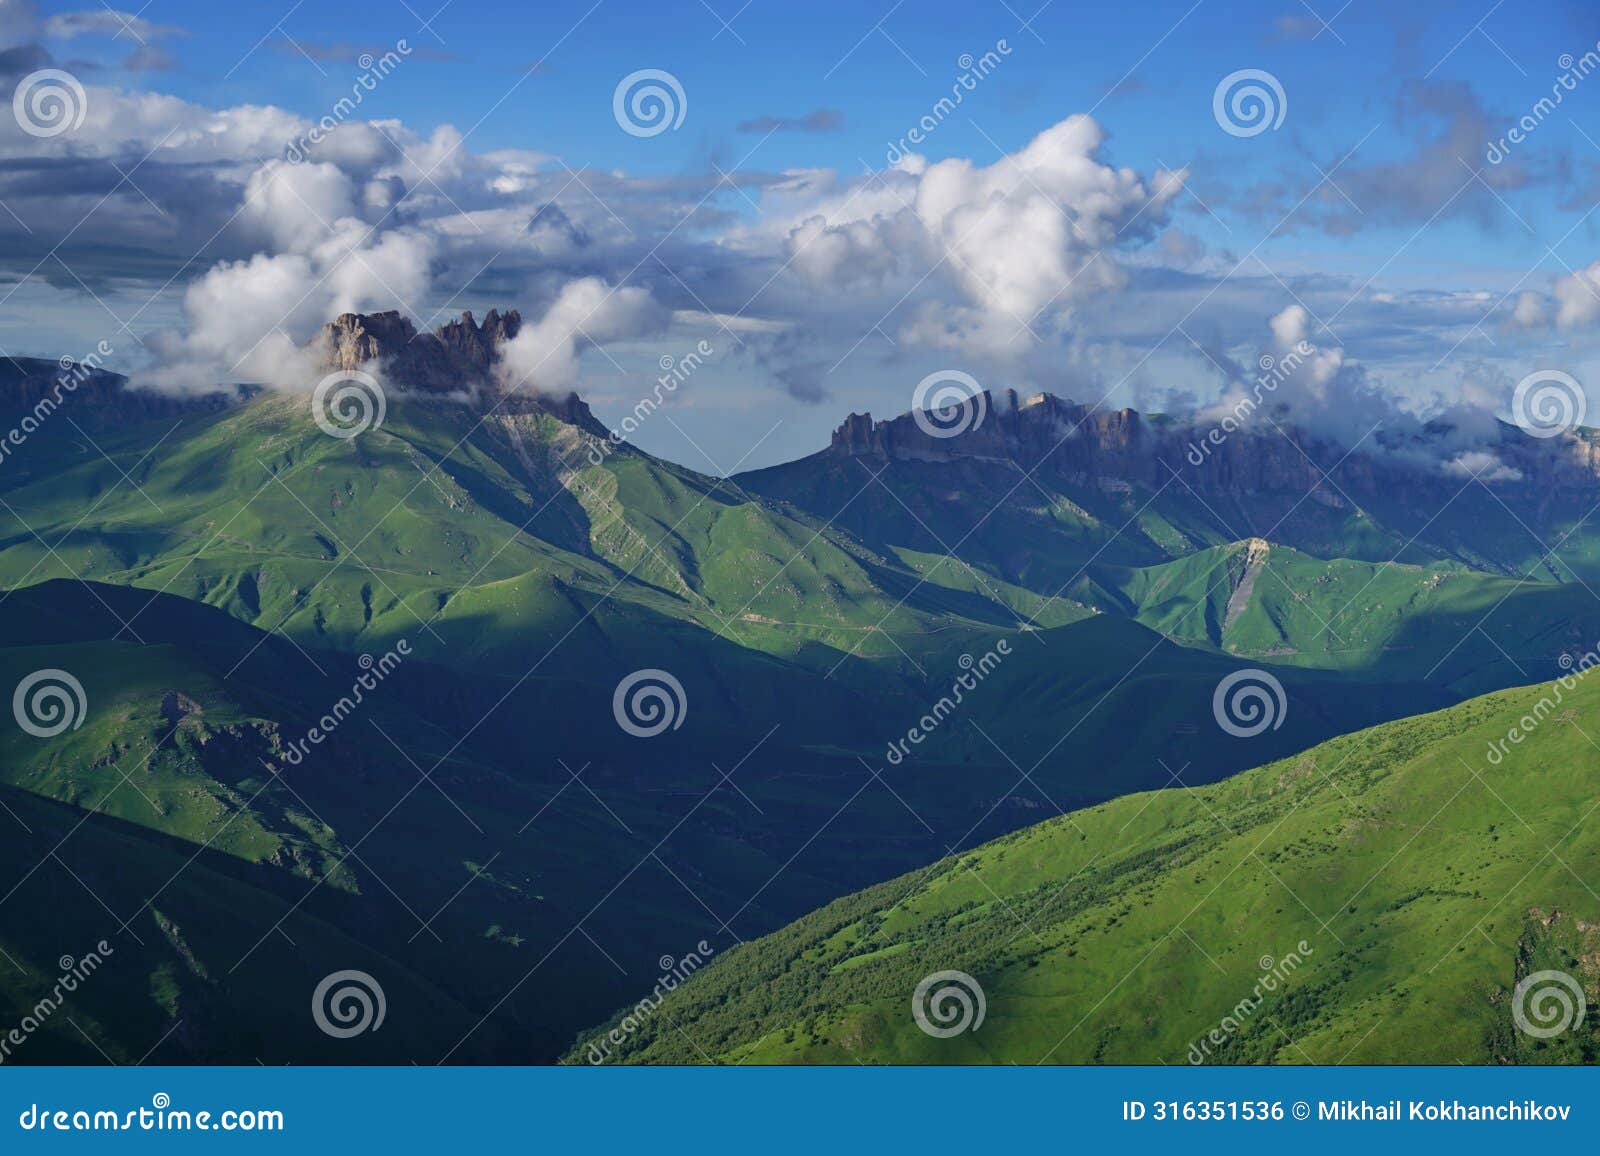 summer landscape in caucasus mountains